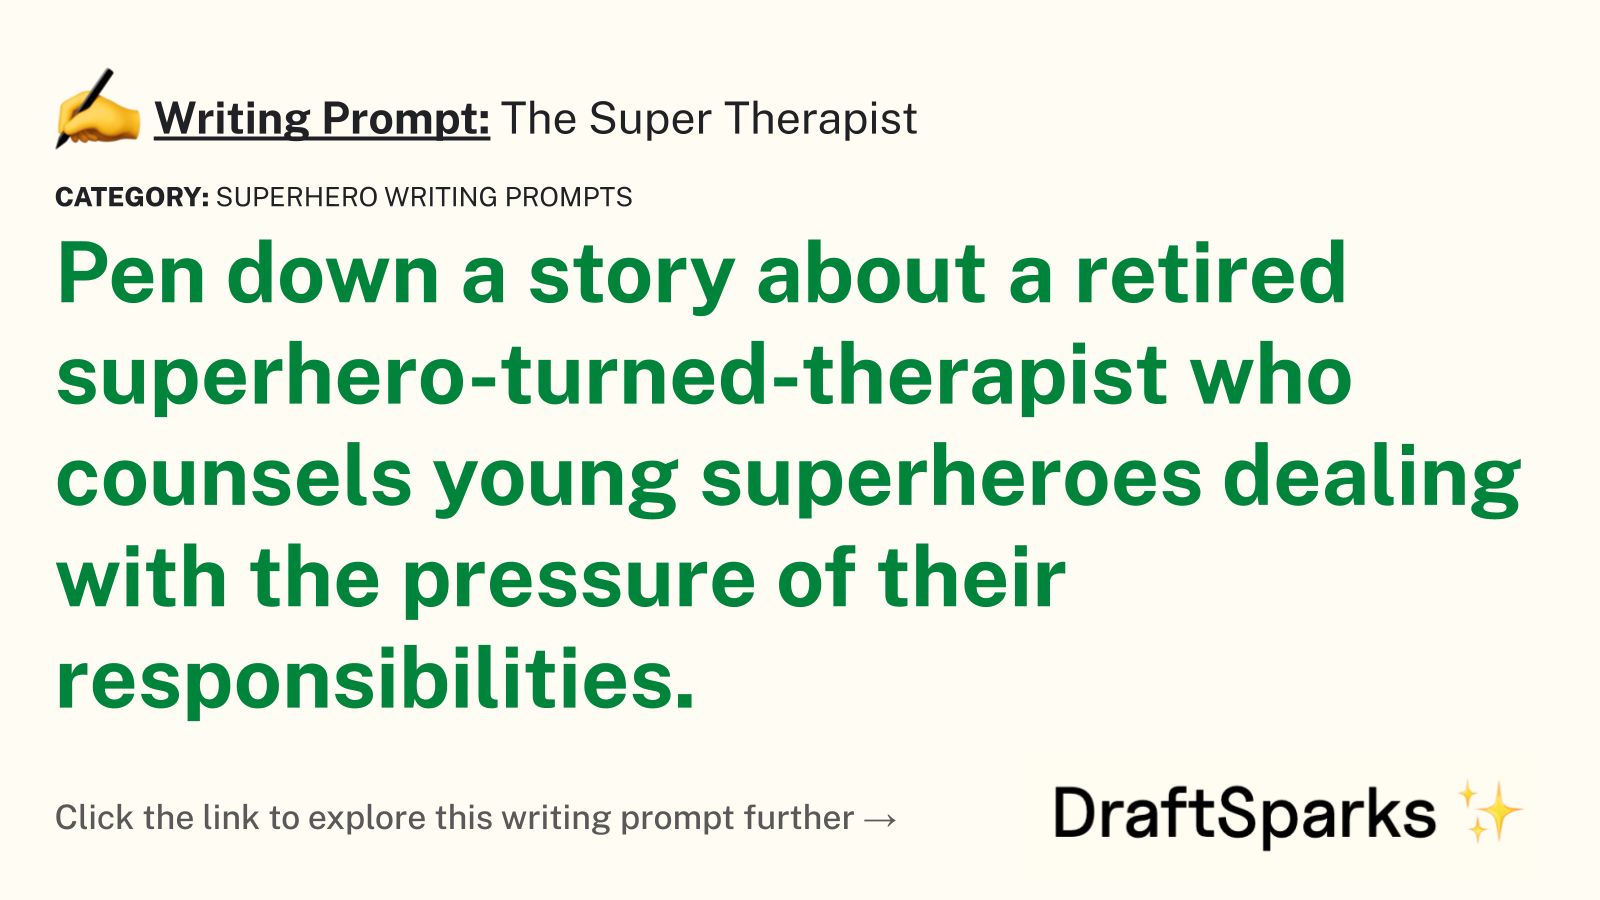 The Super Therapist